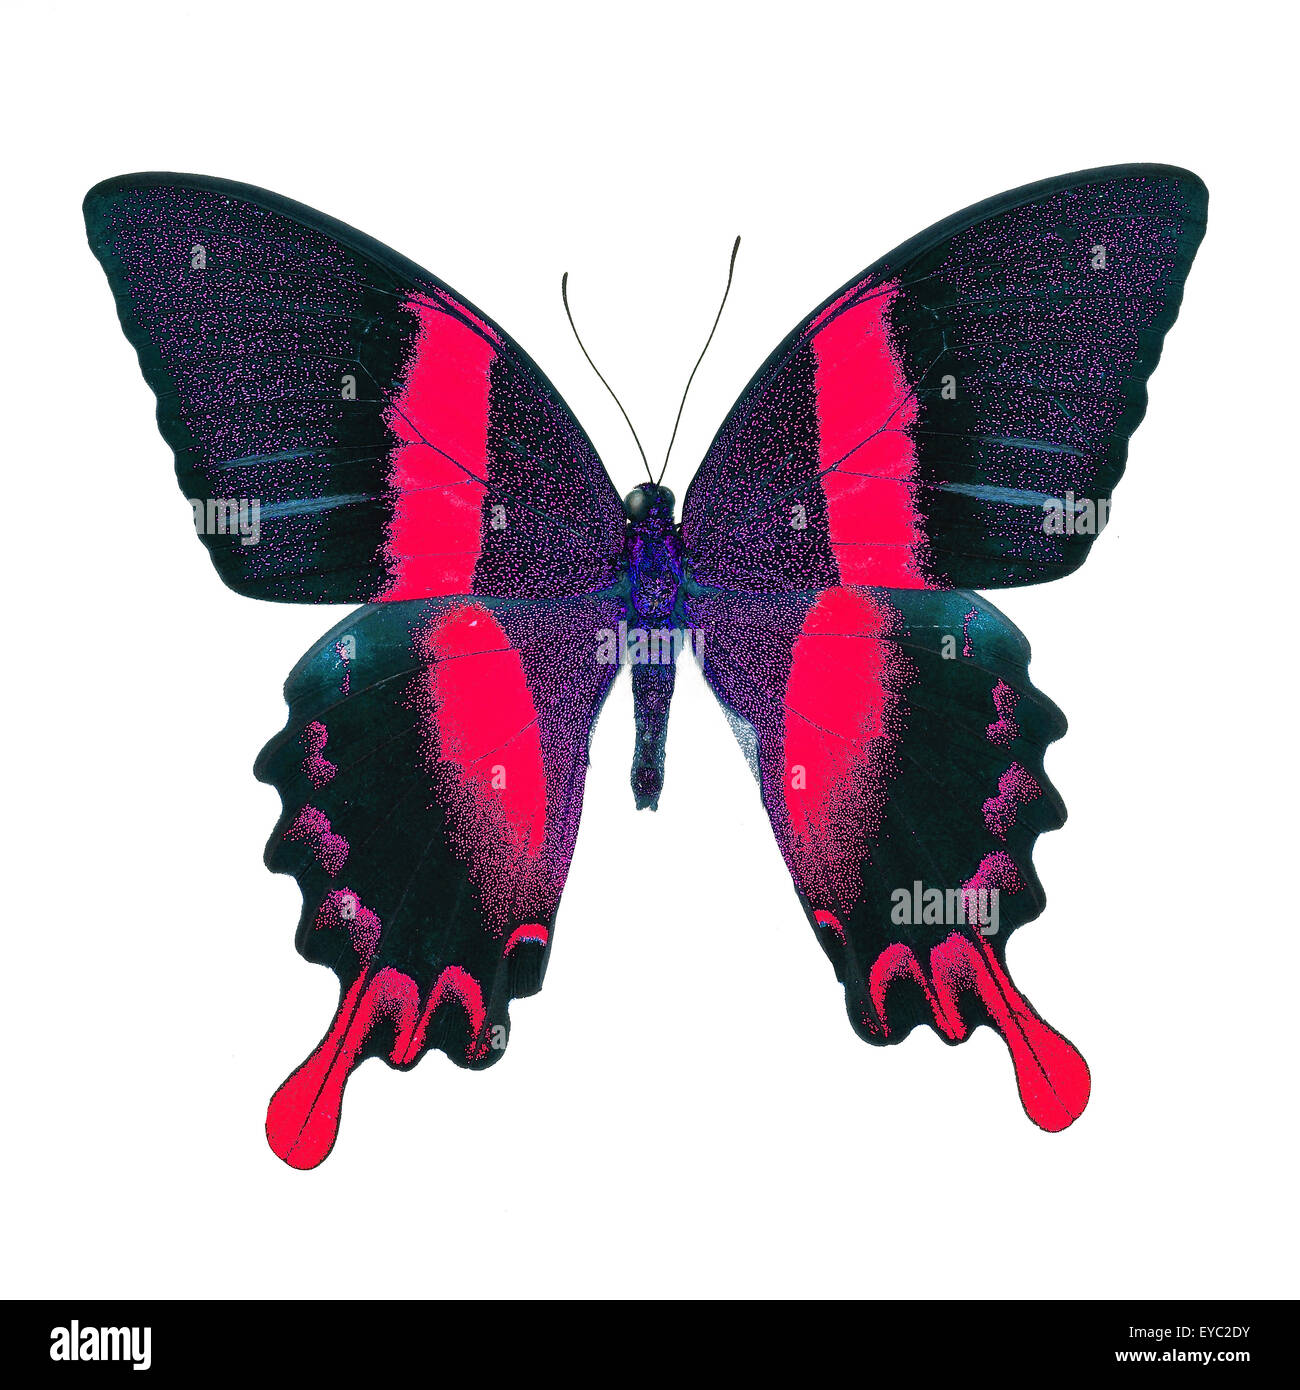 Bella red butterfly, maestose e verdi a coda di rondine (Papilio blumei) in fantasia profilo colore, isolato su sfondo bianco Foto Stock